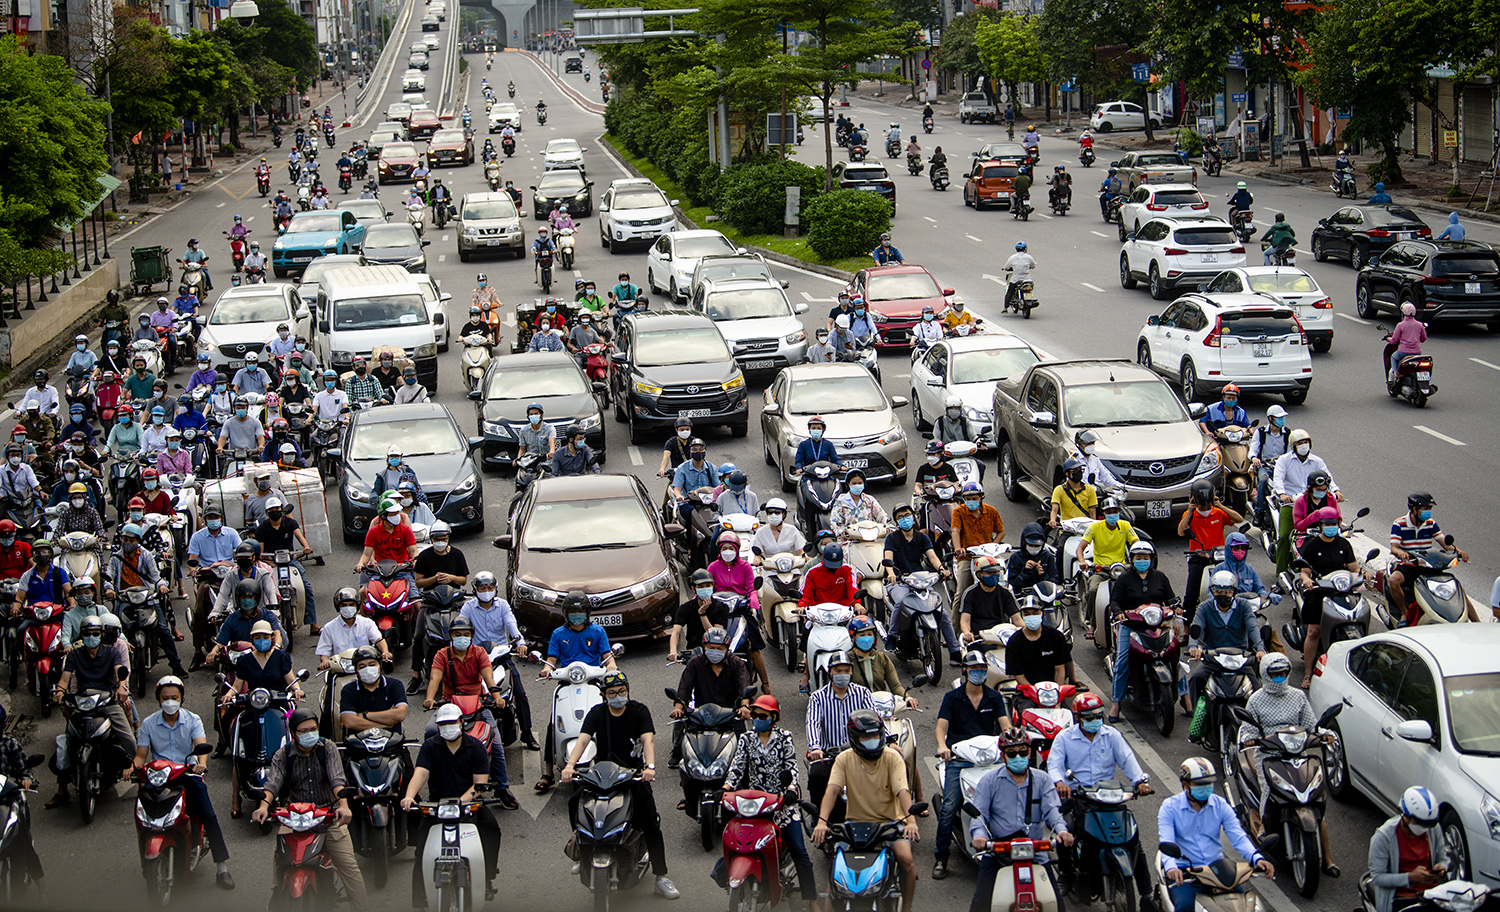 Hàng triệu người đi lại mỗi ngày đều cảm thấy an toàn hơn nhờ sự điều khiển giao thông chuyên nghiệp. Hãy xem hình ảnh để cảm nhận được sự bình yên và sự ổn định mà điều khiển giao thông mang lại.